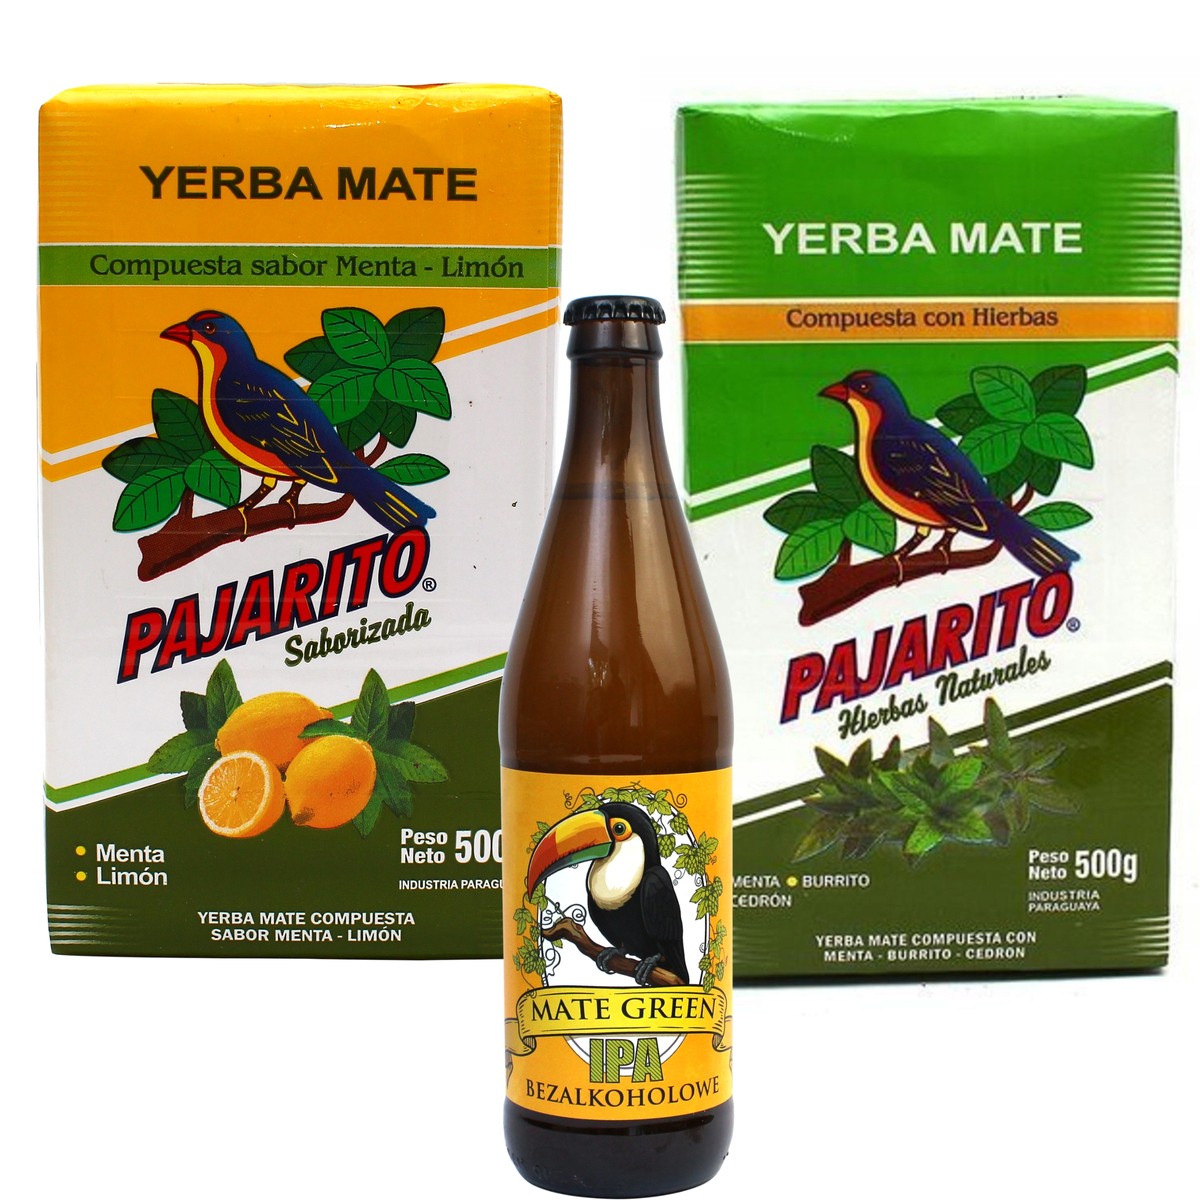 Yerba Mate Pajarito Limon + Hierbas 2 x 500g 1kg + Piwo IPA Guarana 500 ml